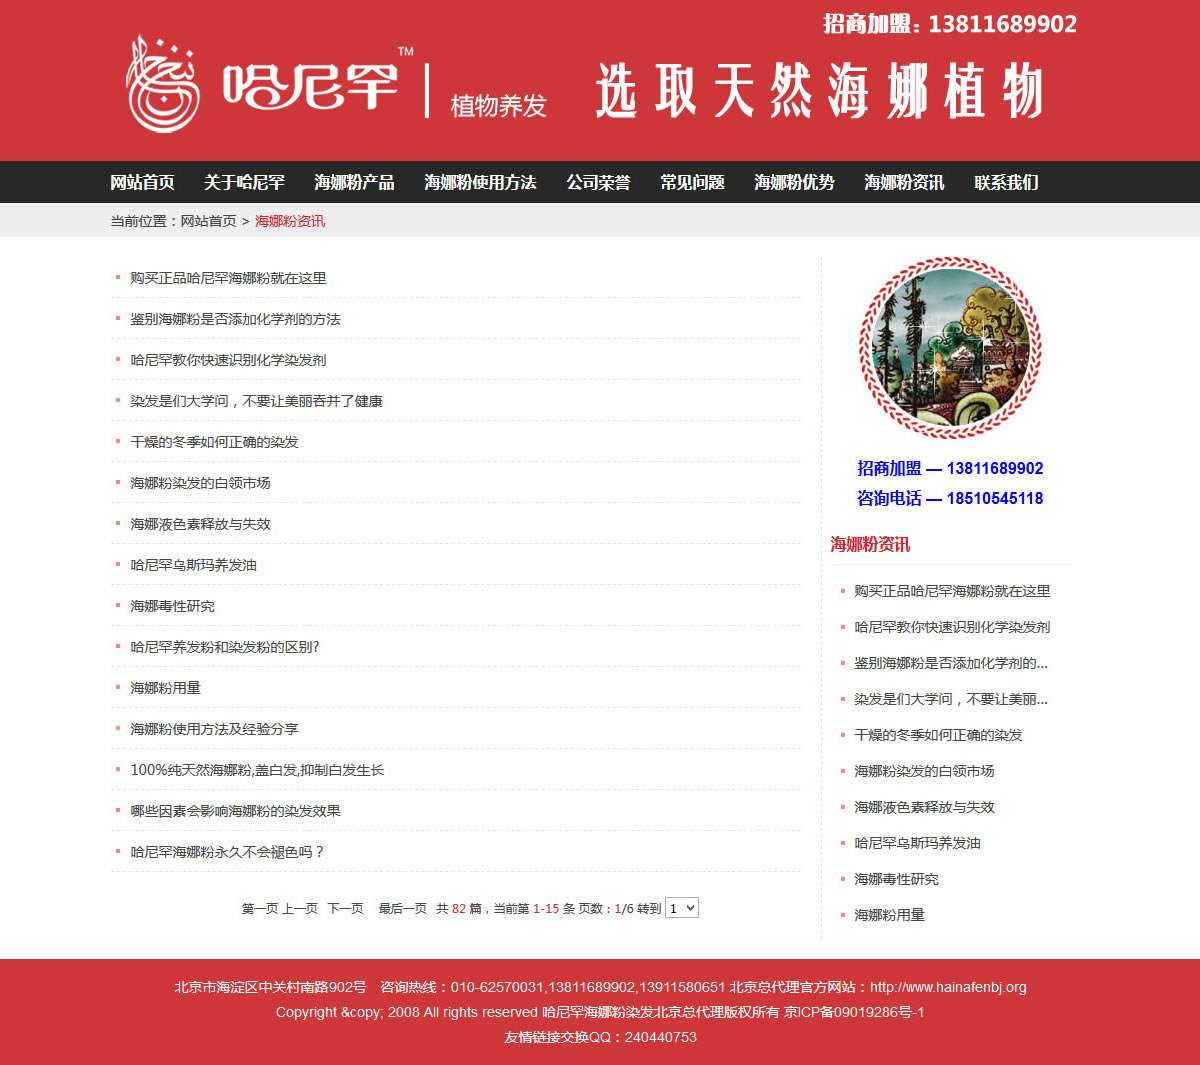 哈尼罕海娜粉北京总代理官网首页资讯展示页